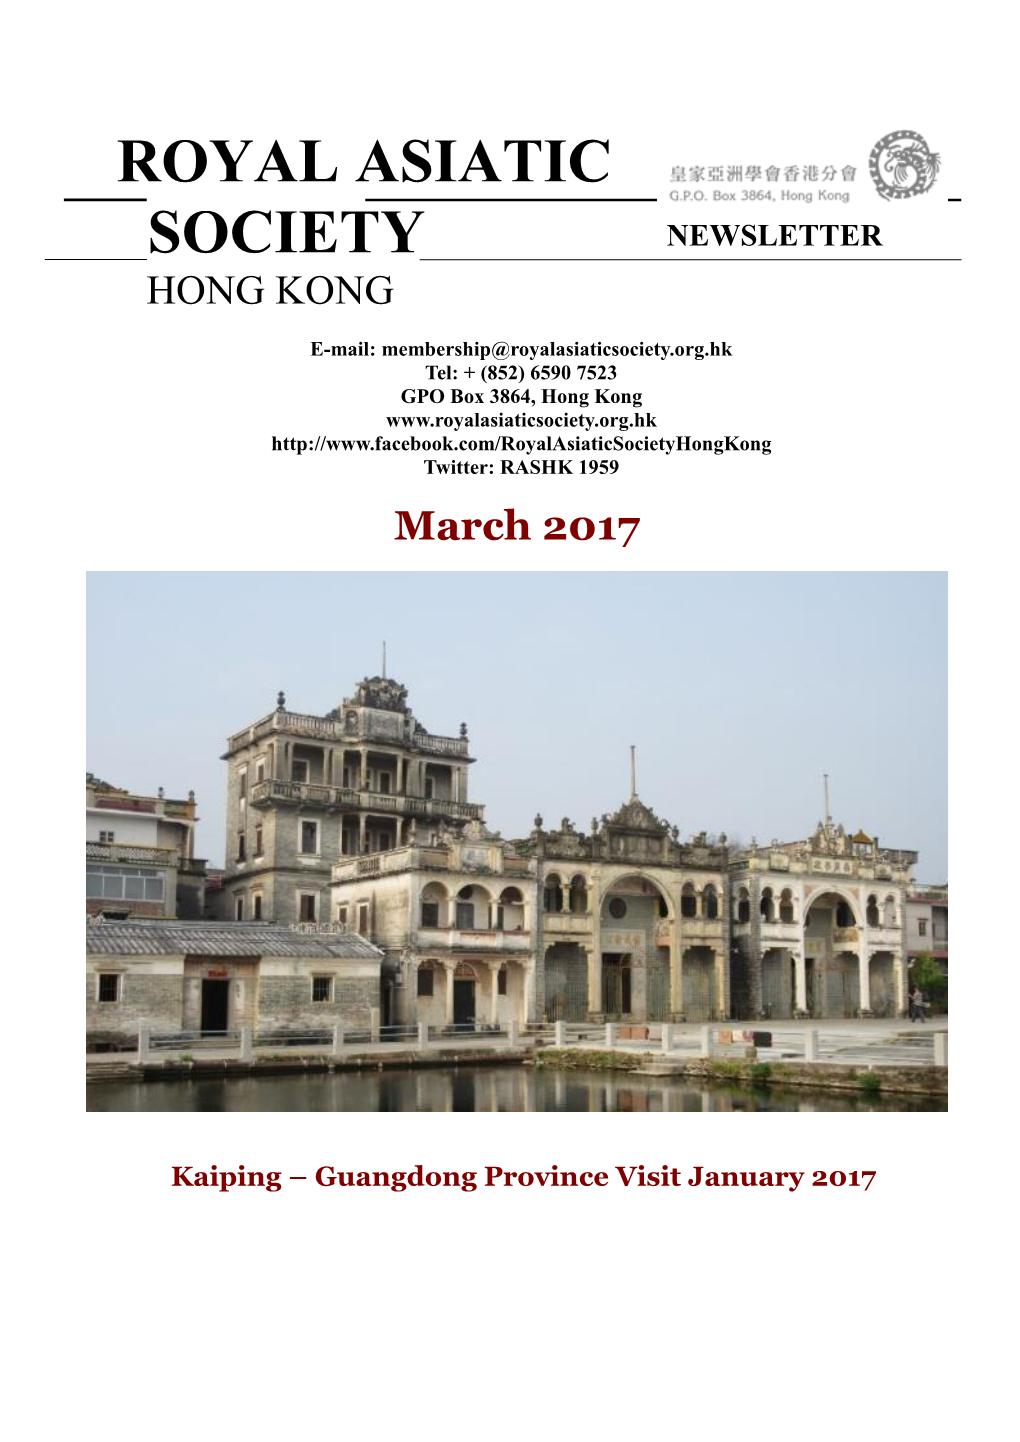 Royal Asiatic Society Hong Kong 2017